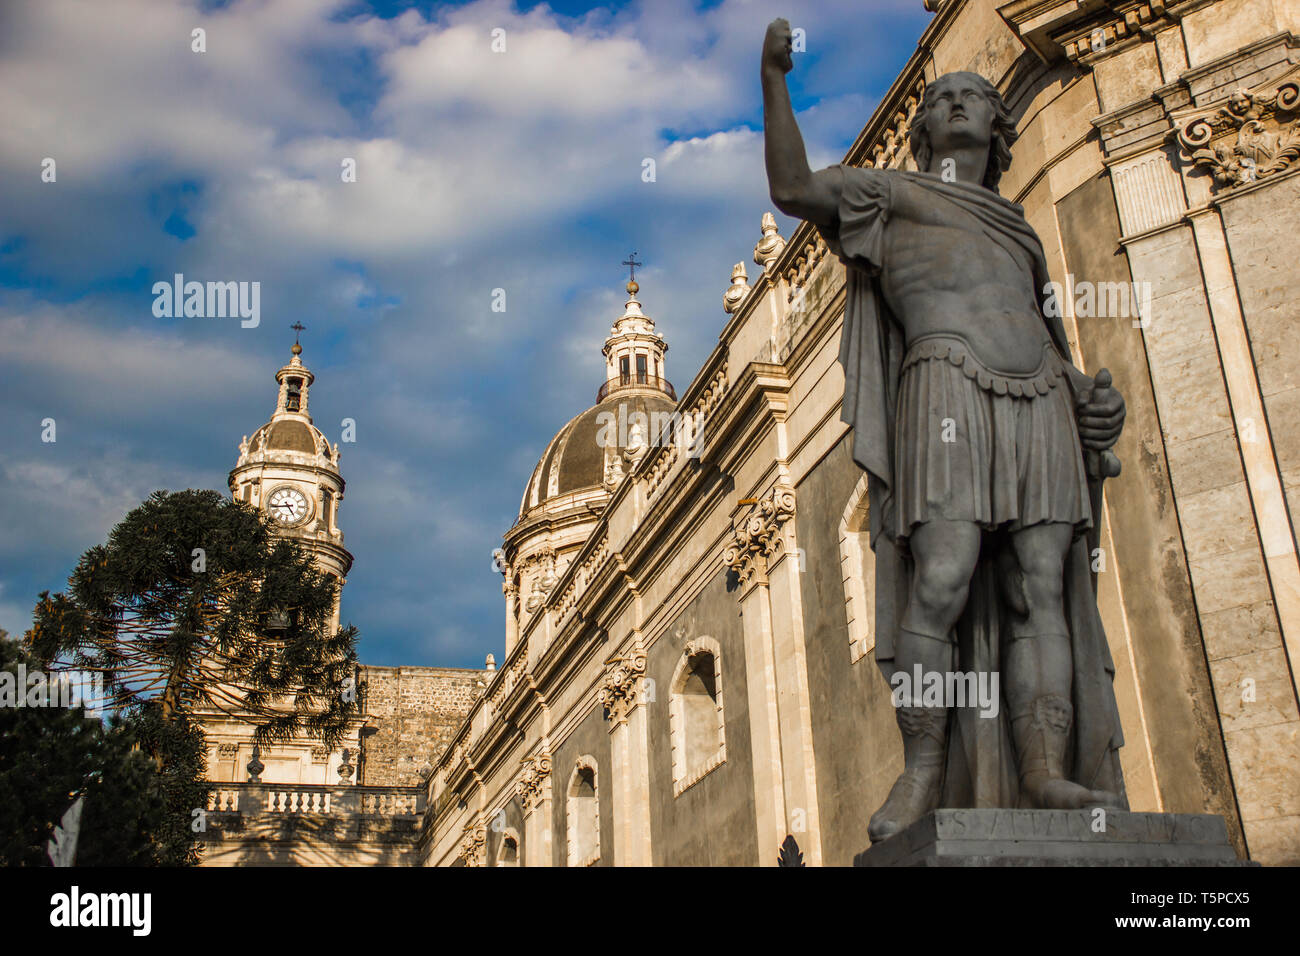 Die Kathedrale von Catania detail, barocken Architektur mit Kuppel, Statue und Glockenturm Stockfoto